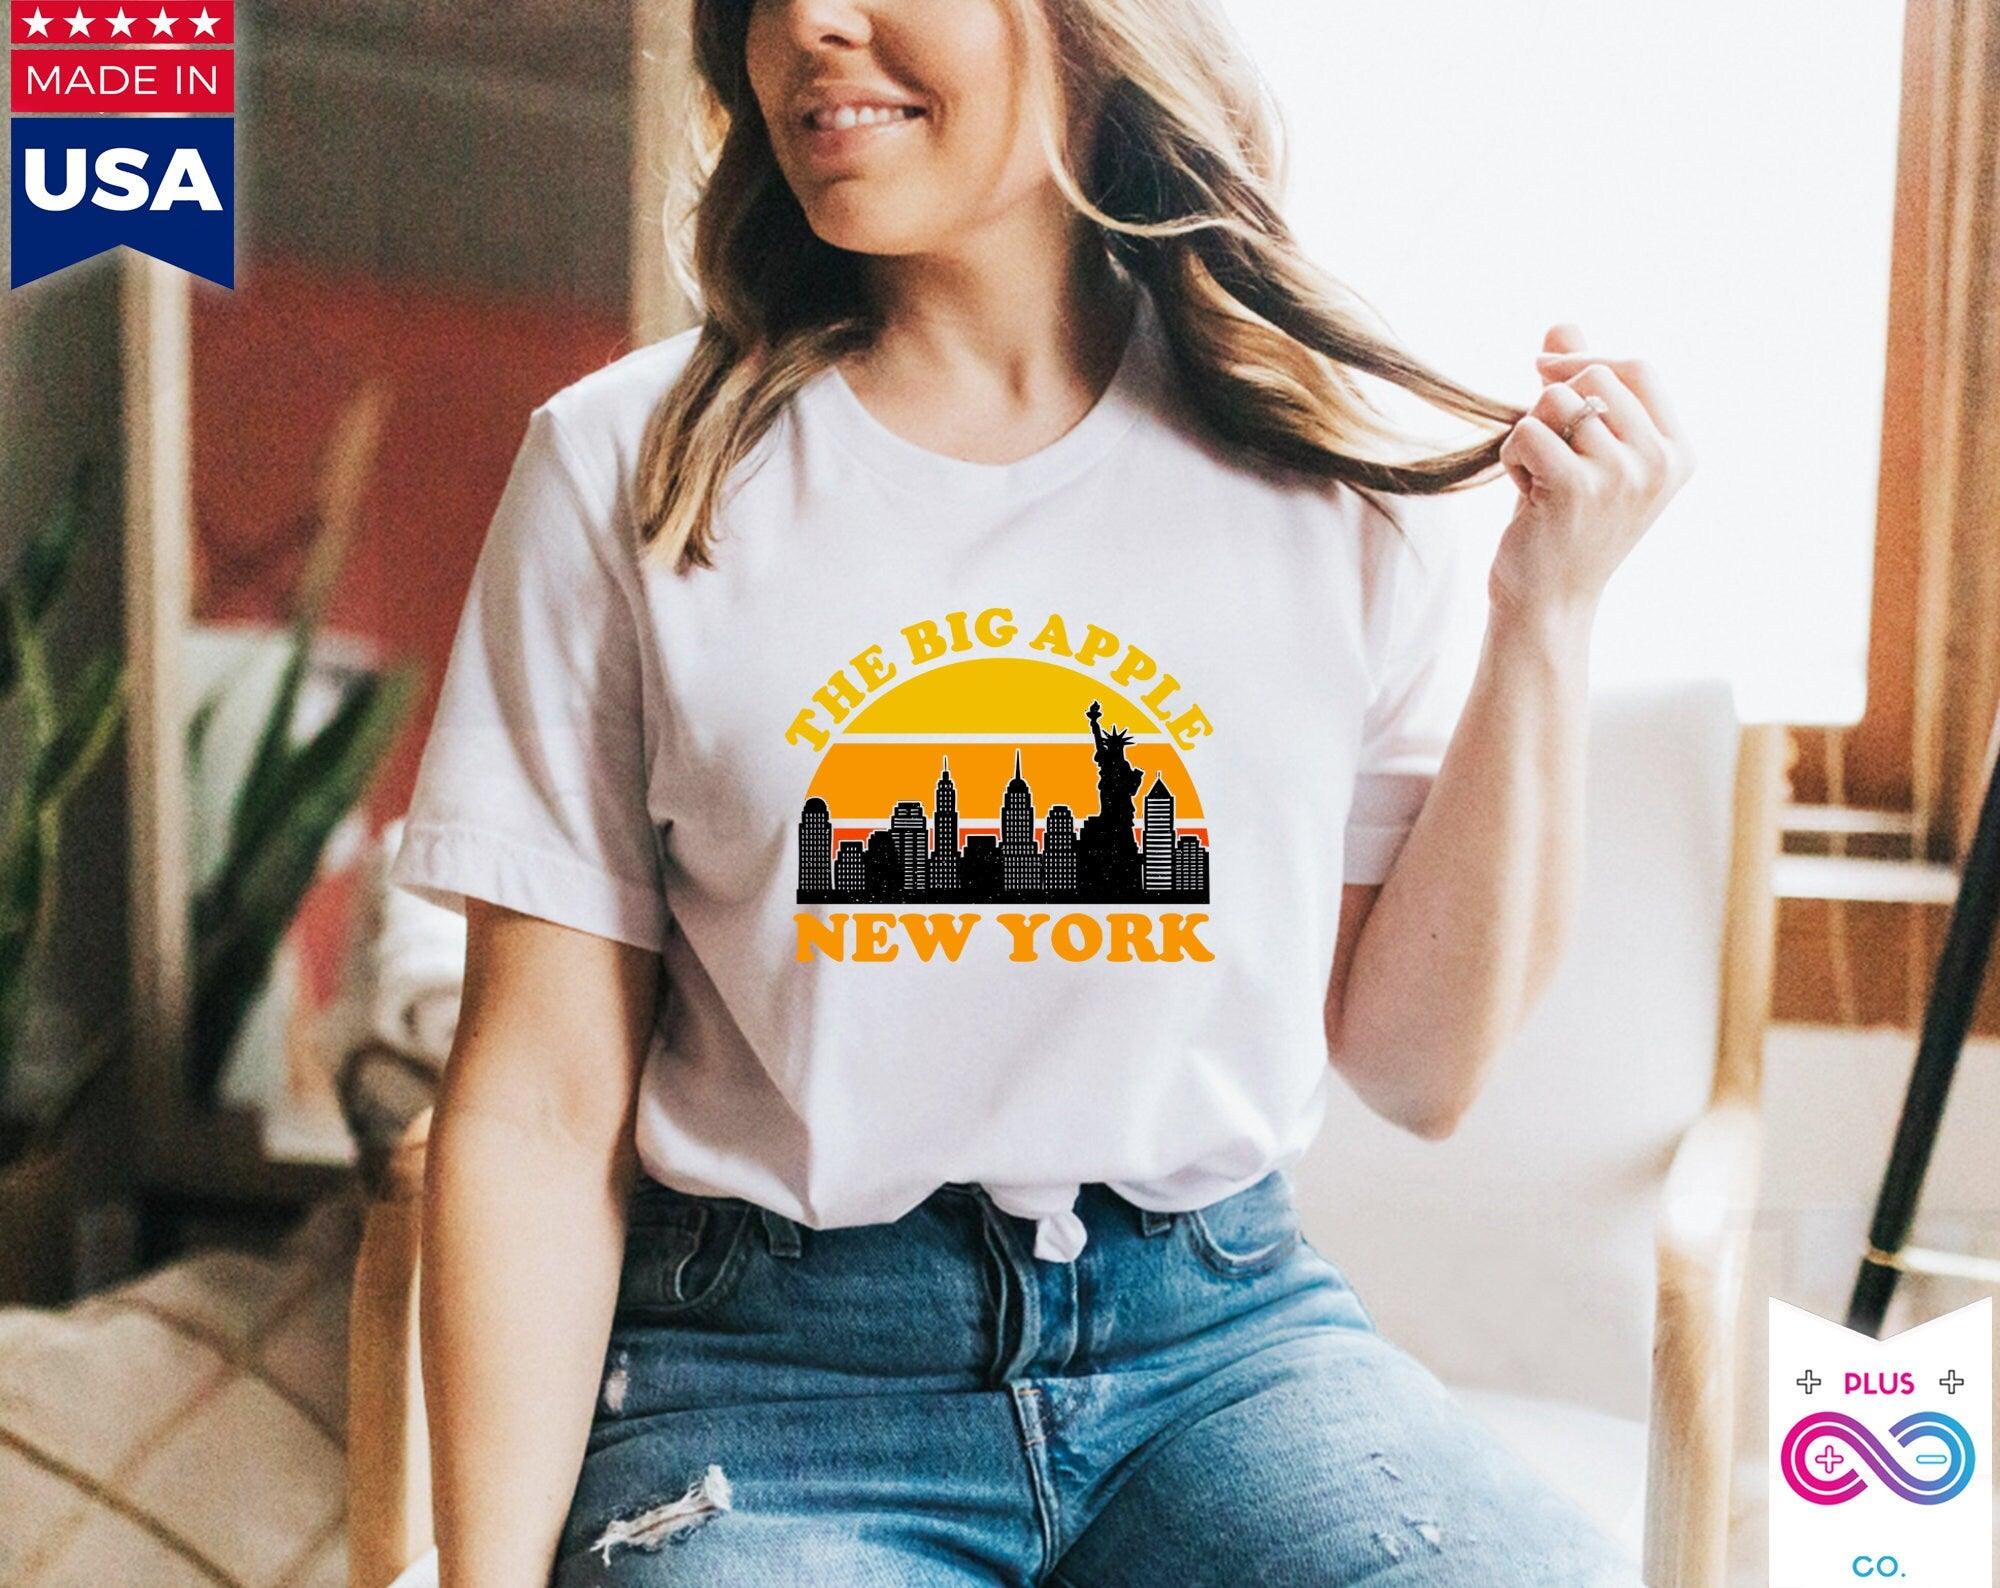 La Gran Manzana Nueva York | Camisetas retro al atardecer, camiseta de recuerdo del horizonte de la ciudad de Nueva York, disfraz de fiestas de Nueva York, viaje de viaje a Nueva York, puente de Brooklyn, horizonte de la ciudad, manhattan, nueva york, arte de la ciudad de nueva york, regalo de nueva york, impresión de nueva york, horizonte de nueva york, nueva york, regalo de nueva york, horizonte de nueva york, estatua de la libertad, camiseta, camisetas - plusminusco.com